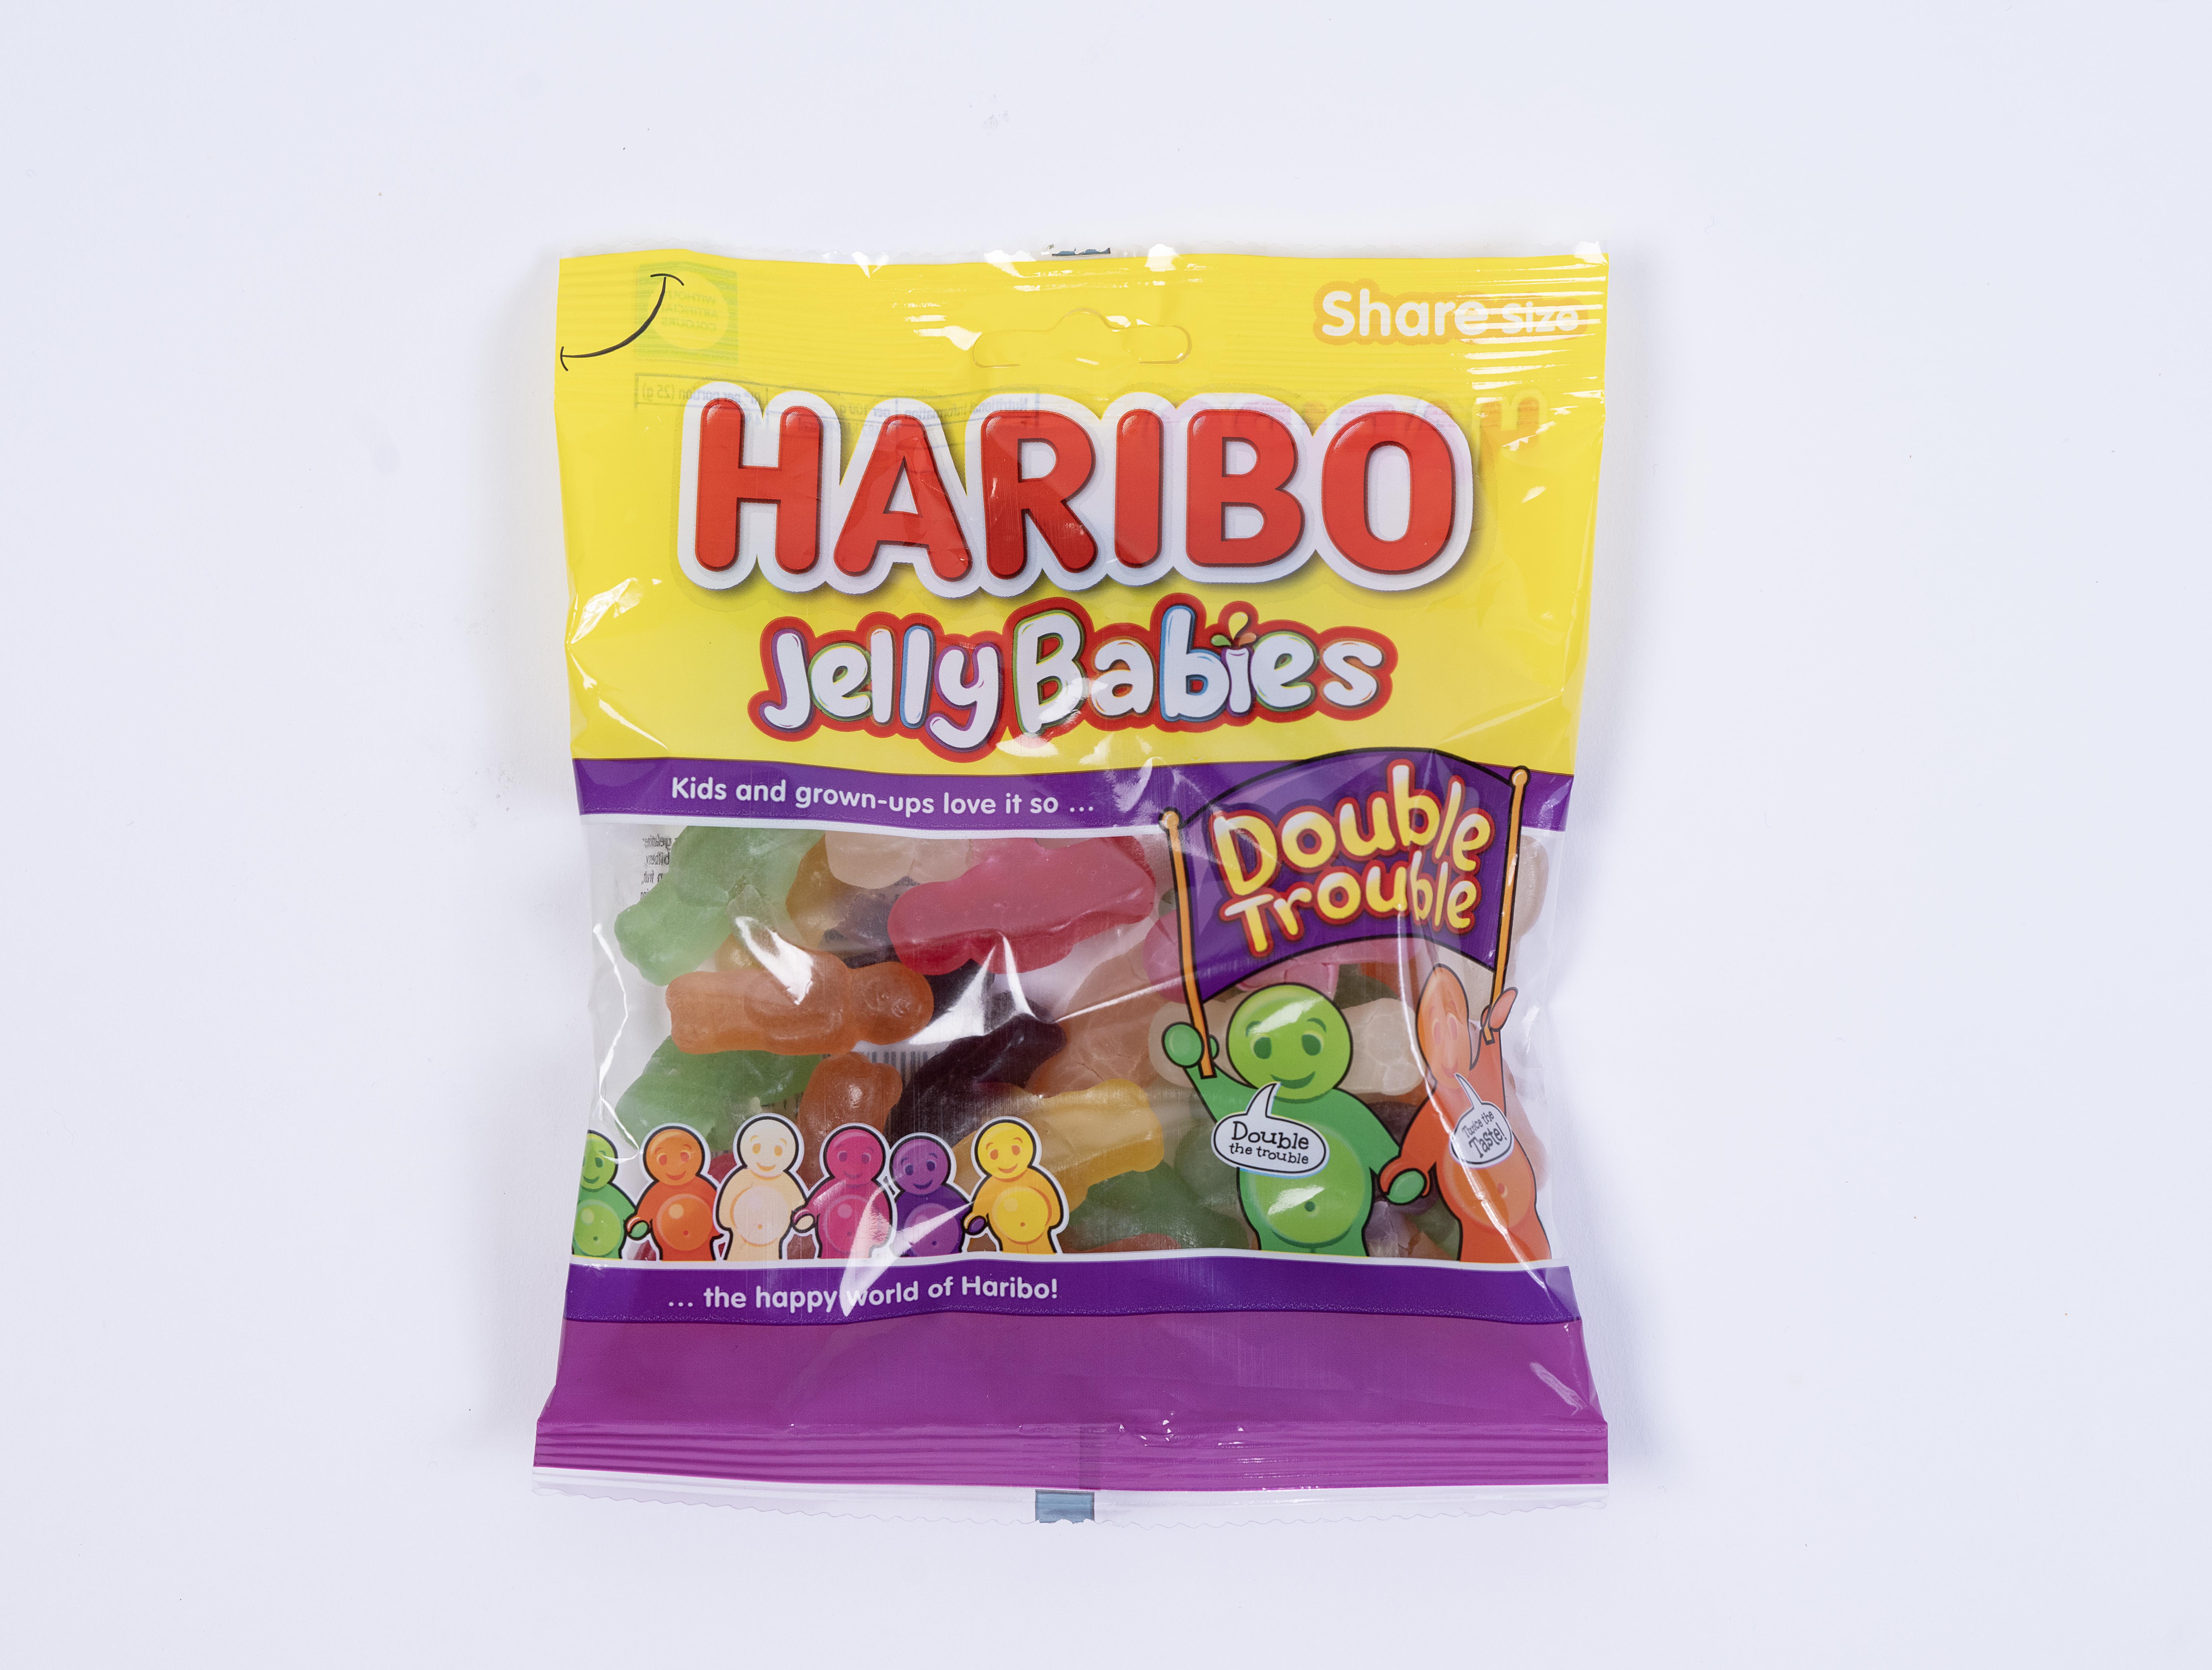 Die Baby-Bonbons von Haribo unterscheiden sich schon in der Verpackung deutlich voneinander